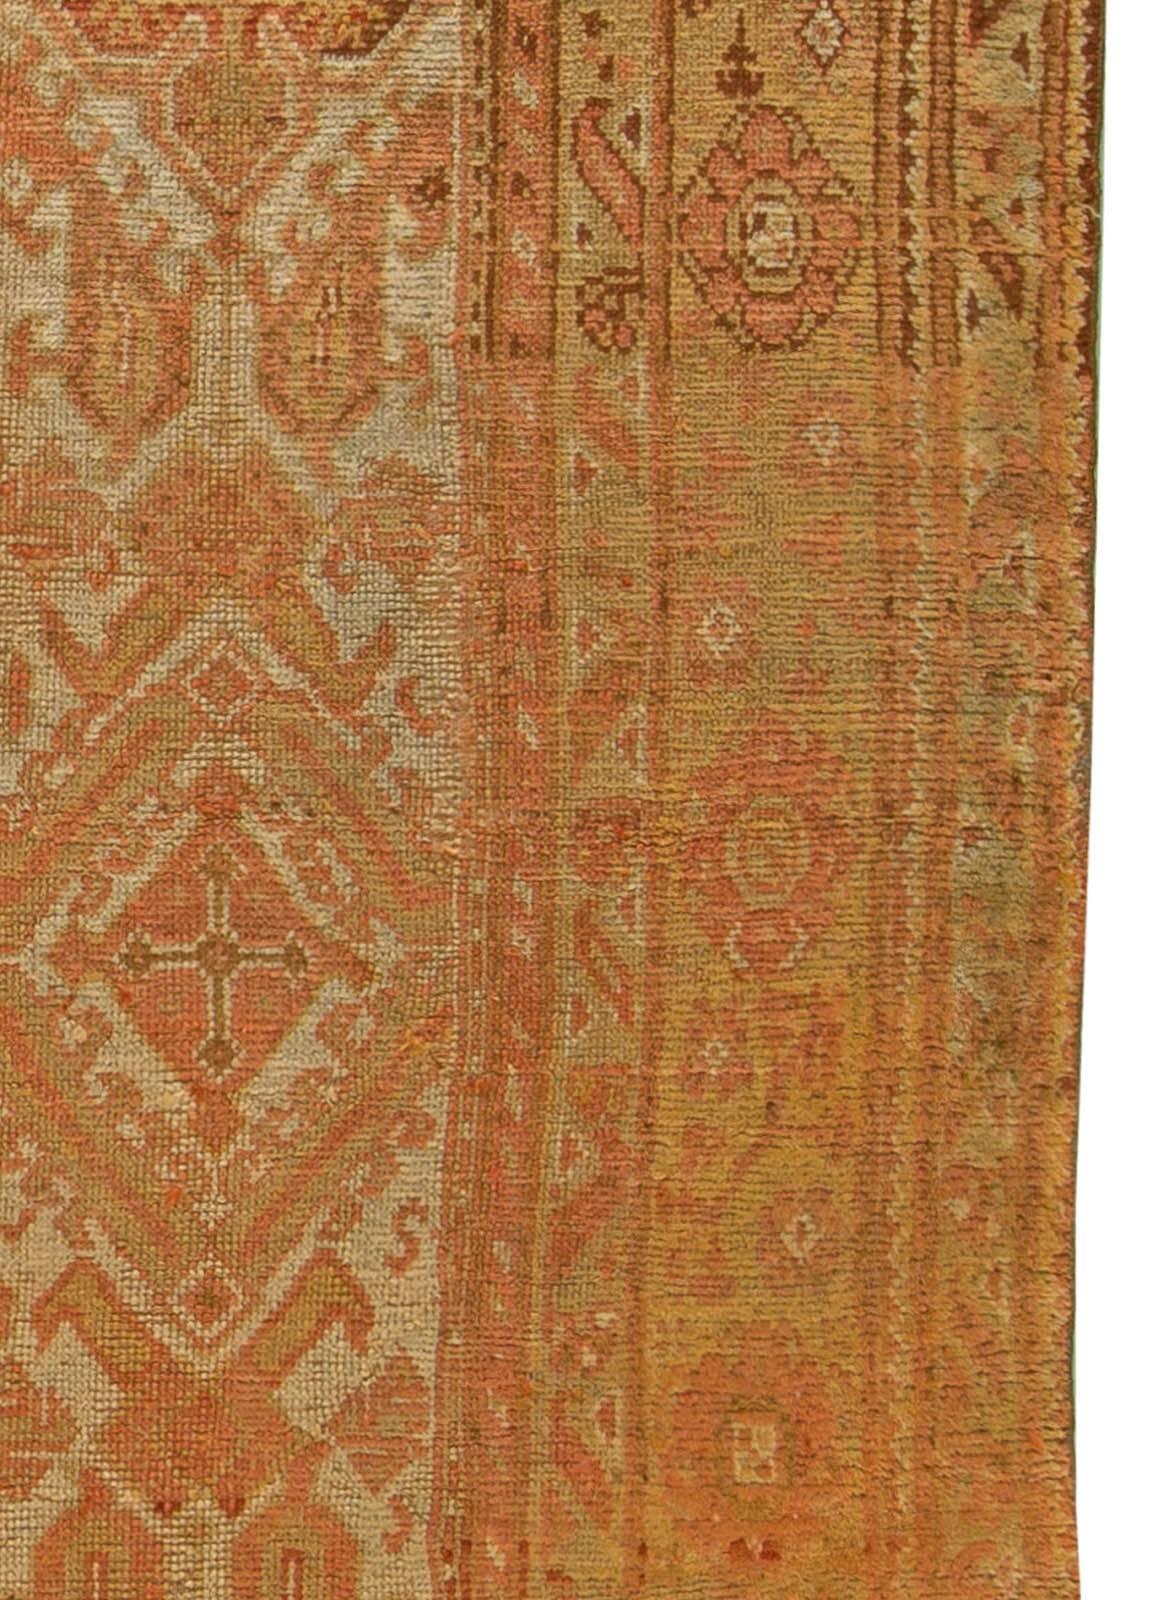 Wool Antique Turkish Oushak Carpet